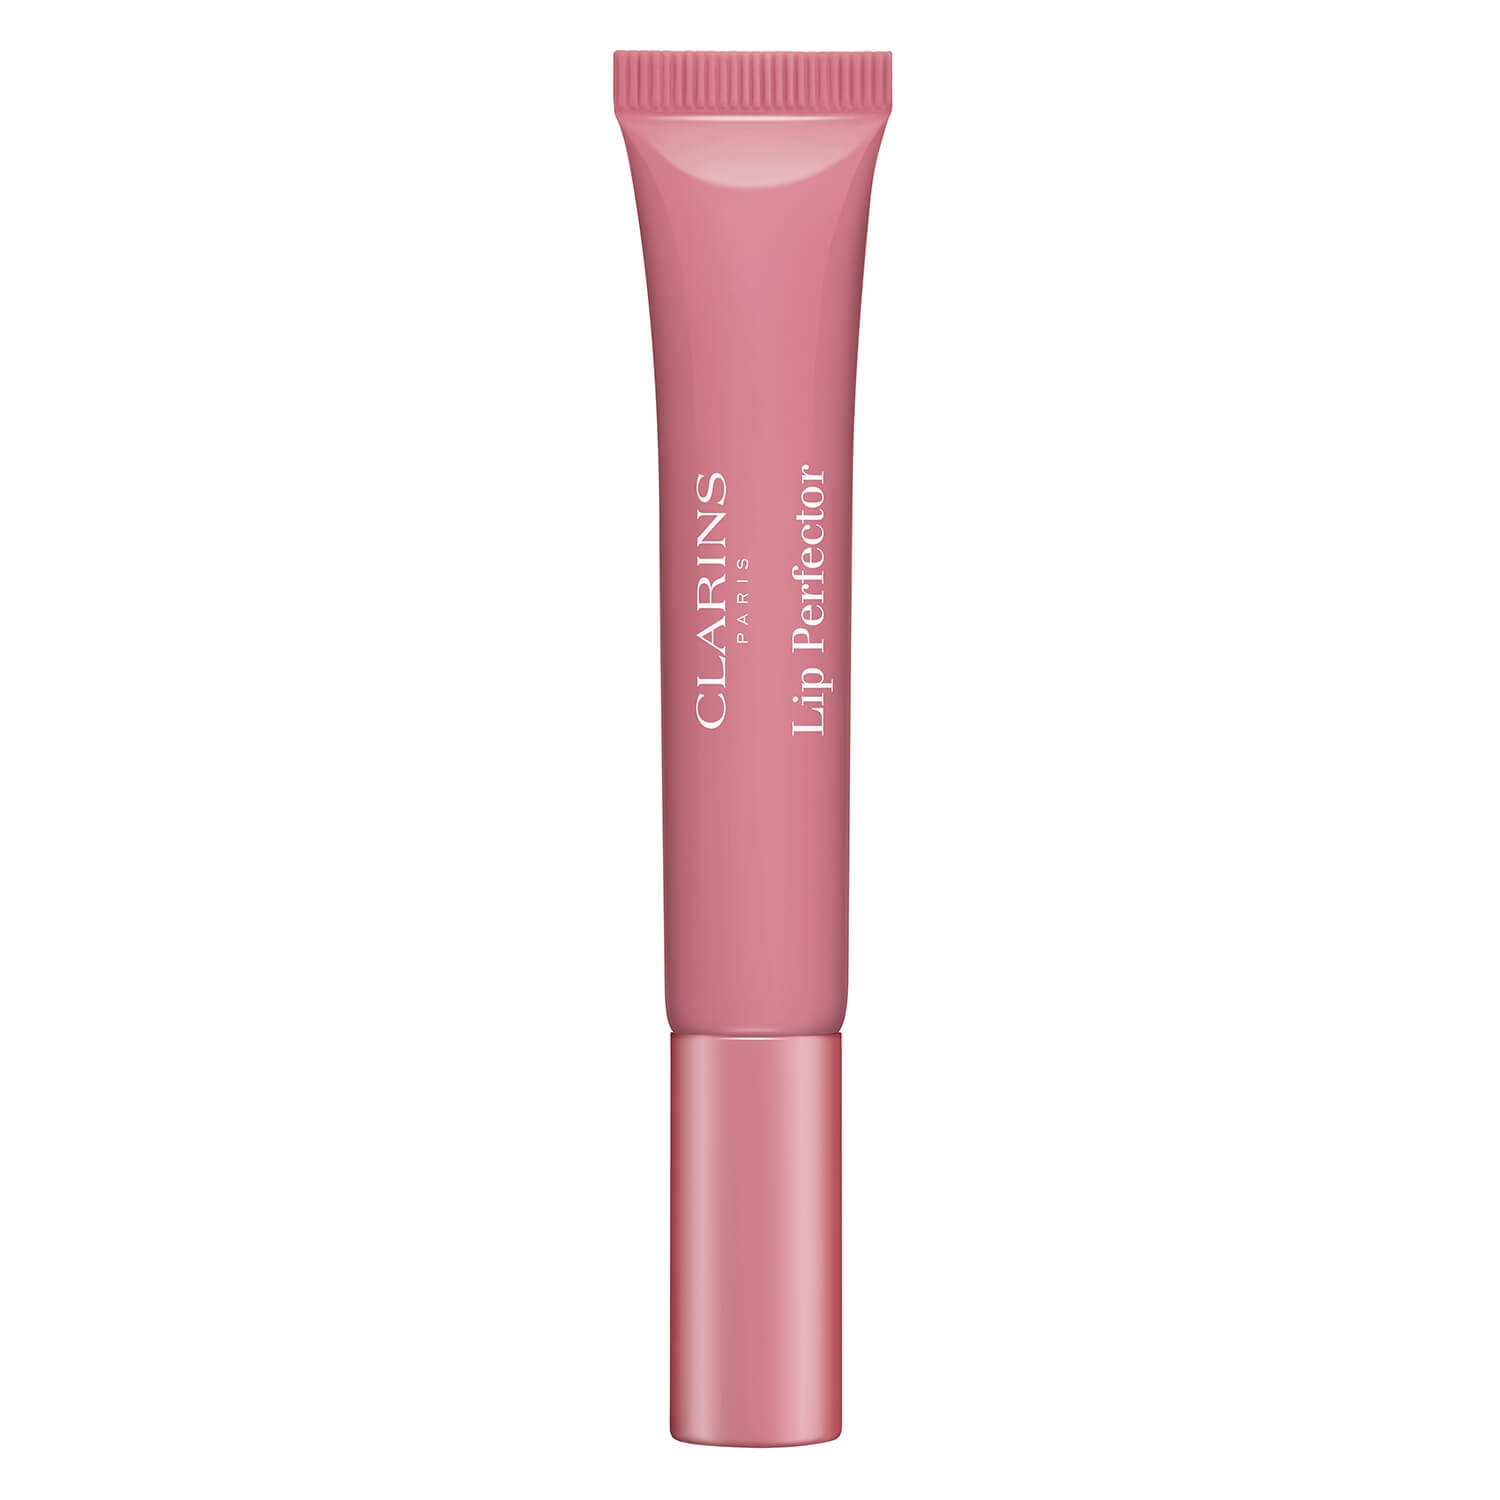 Produktbild von Lip Perfector - Toffee Pink Shimmer 07